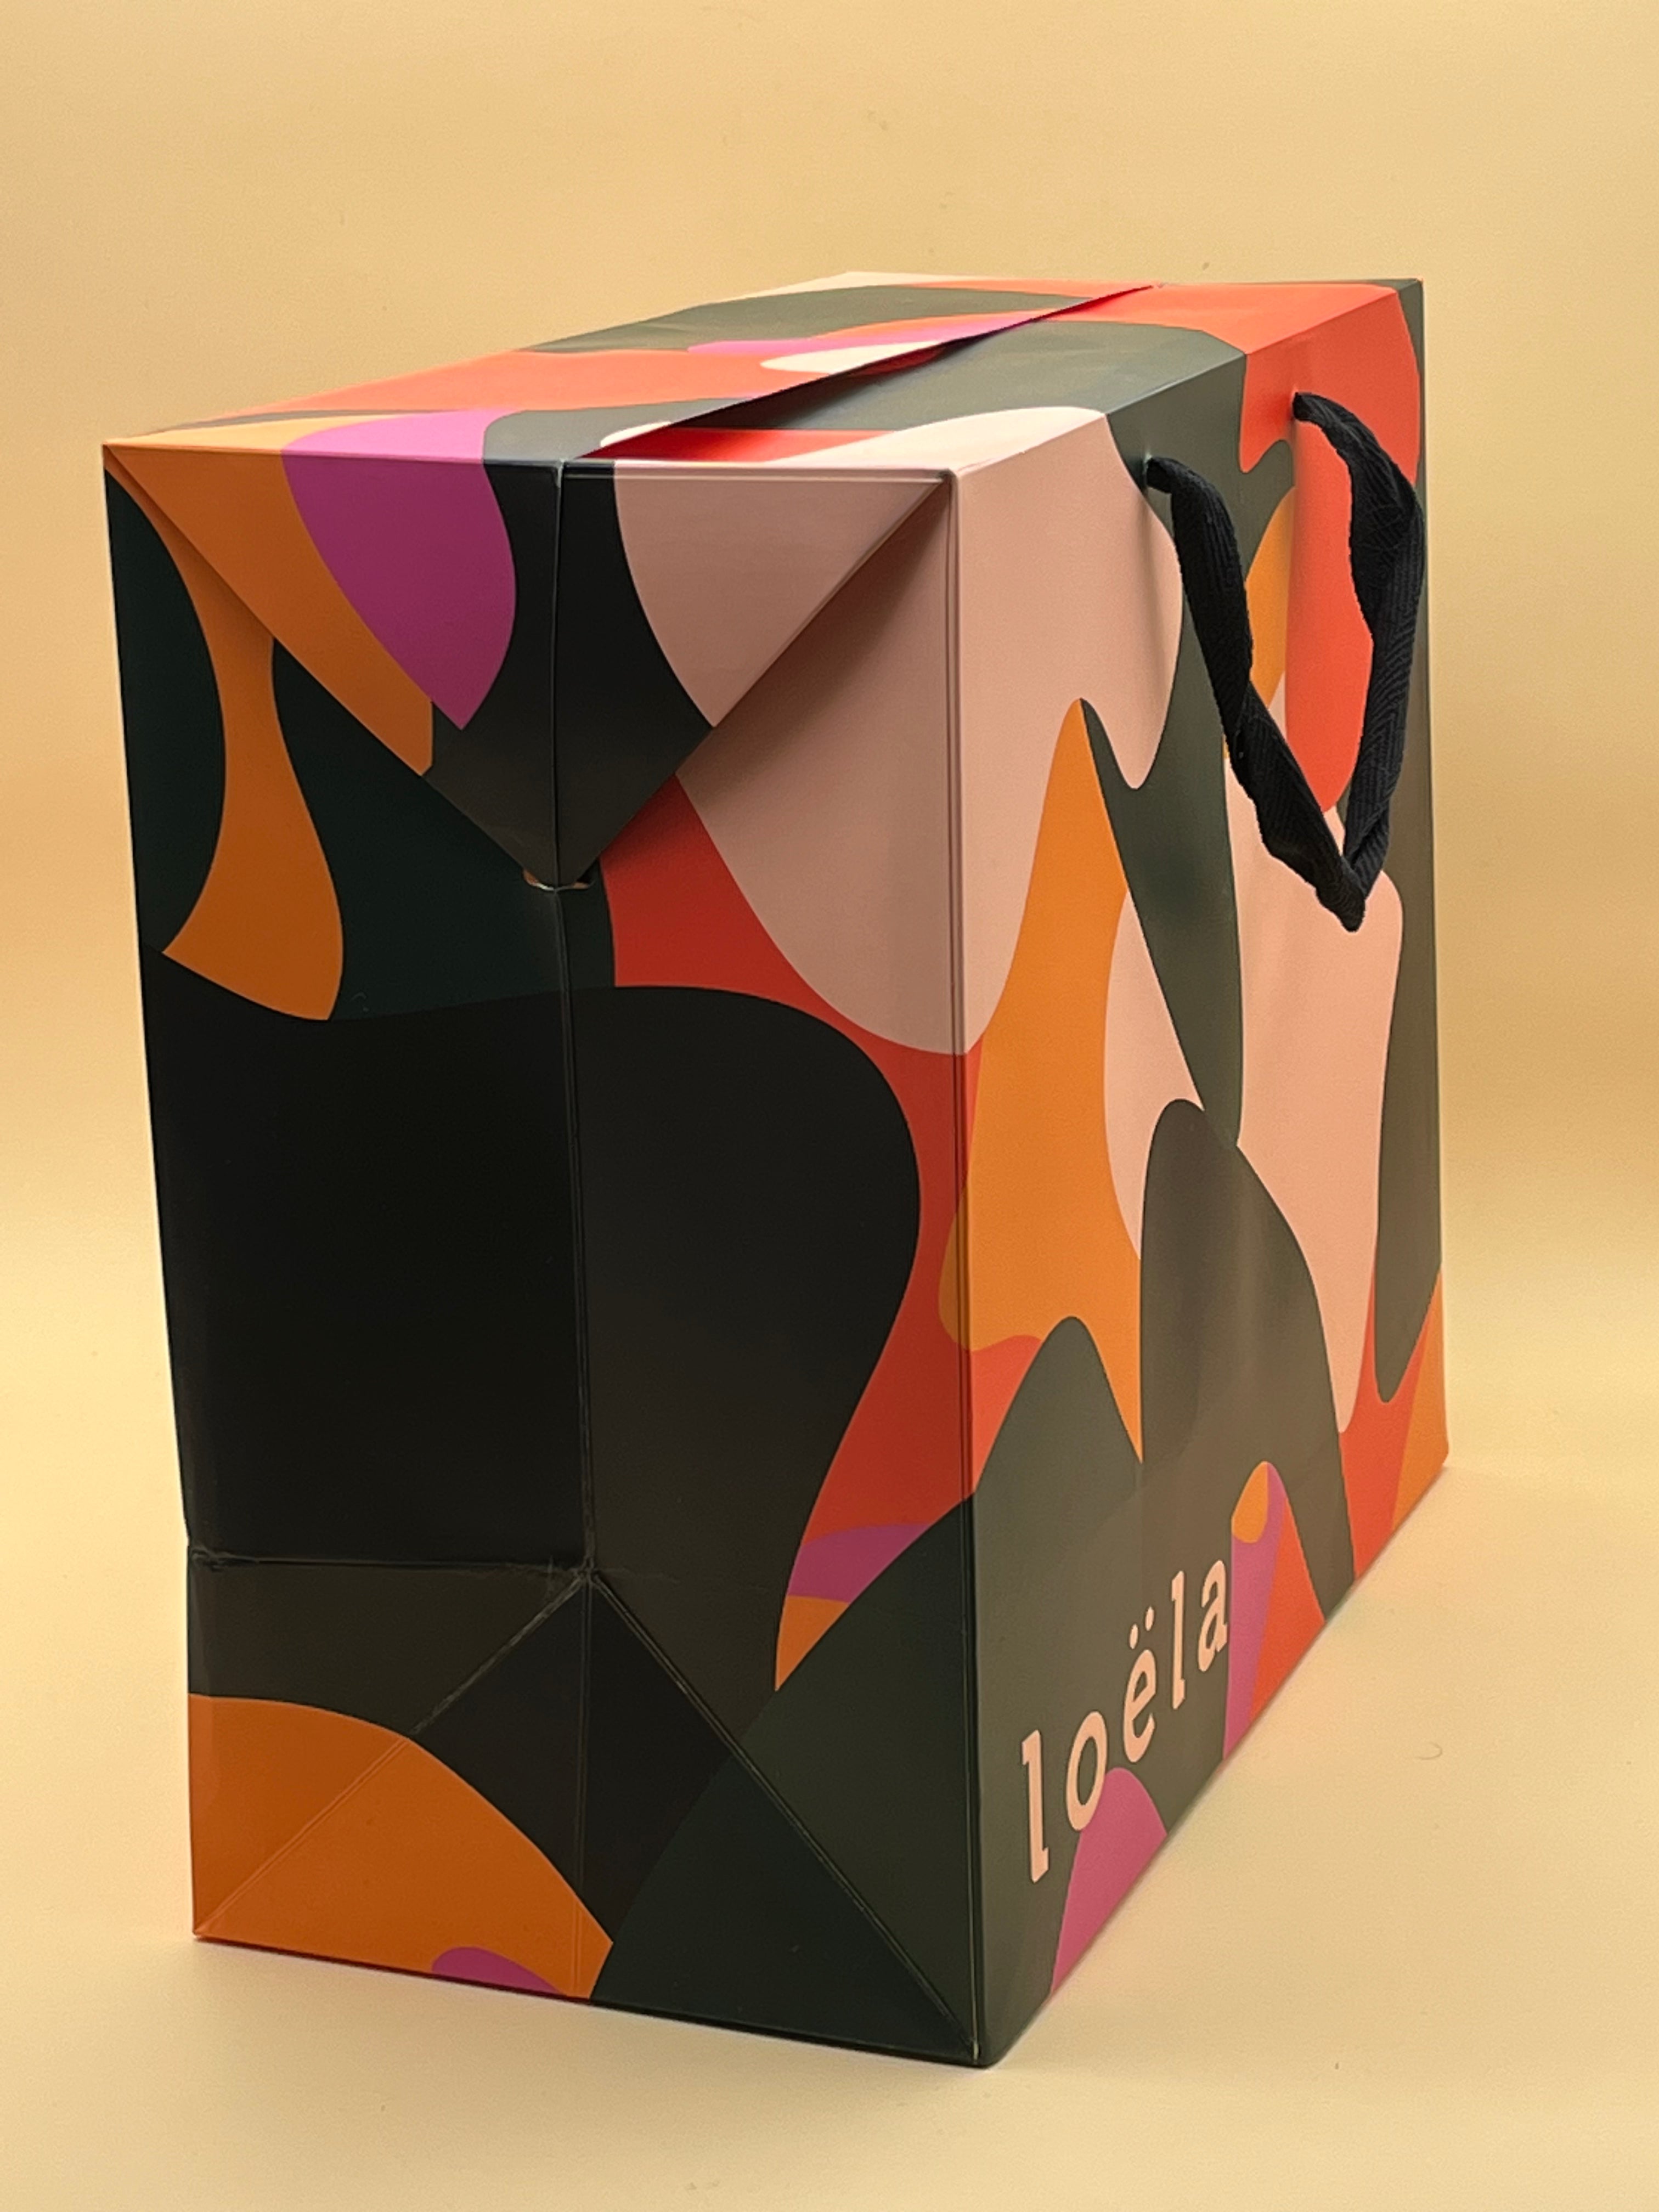 Boîte cadeau - Loëla Emballage de cadeaux pour femme